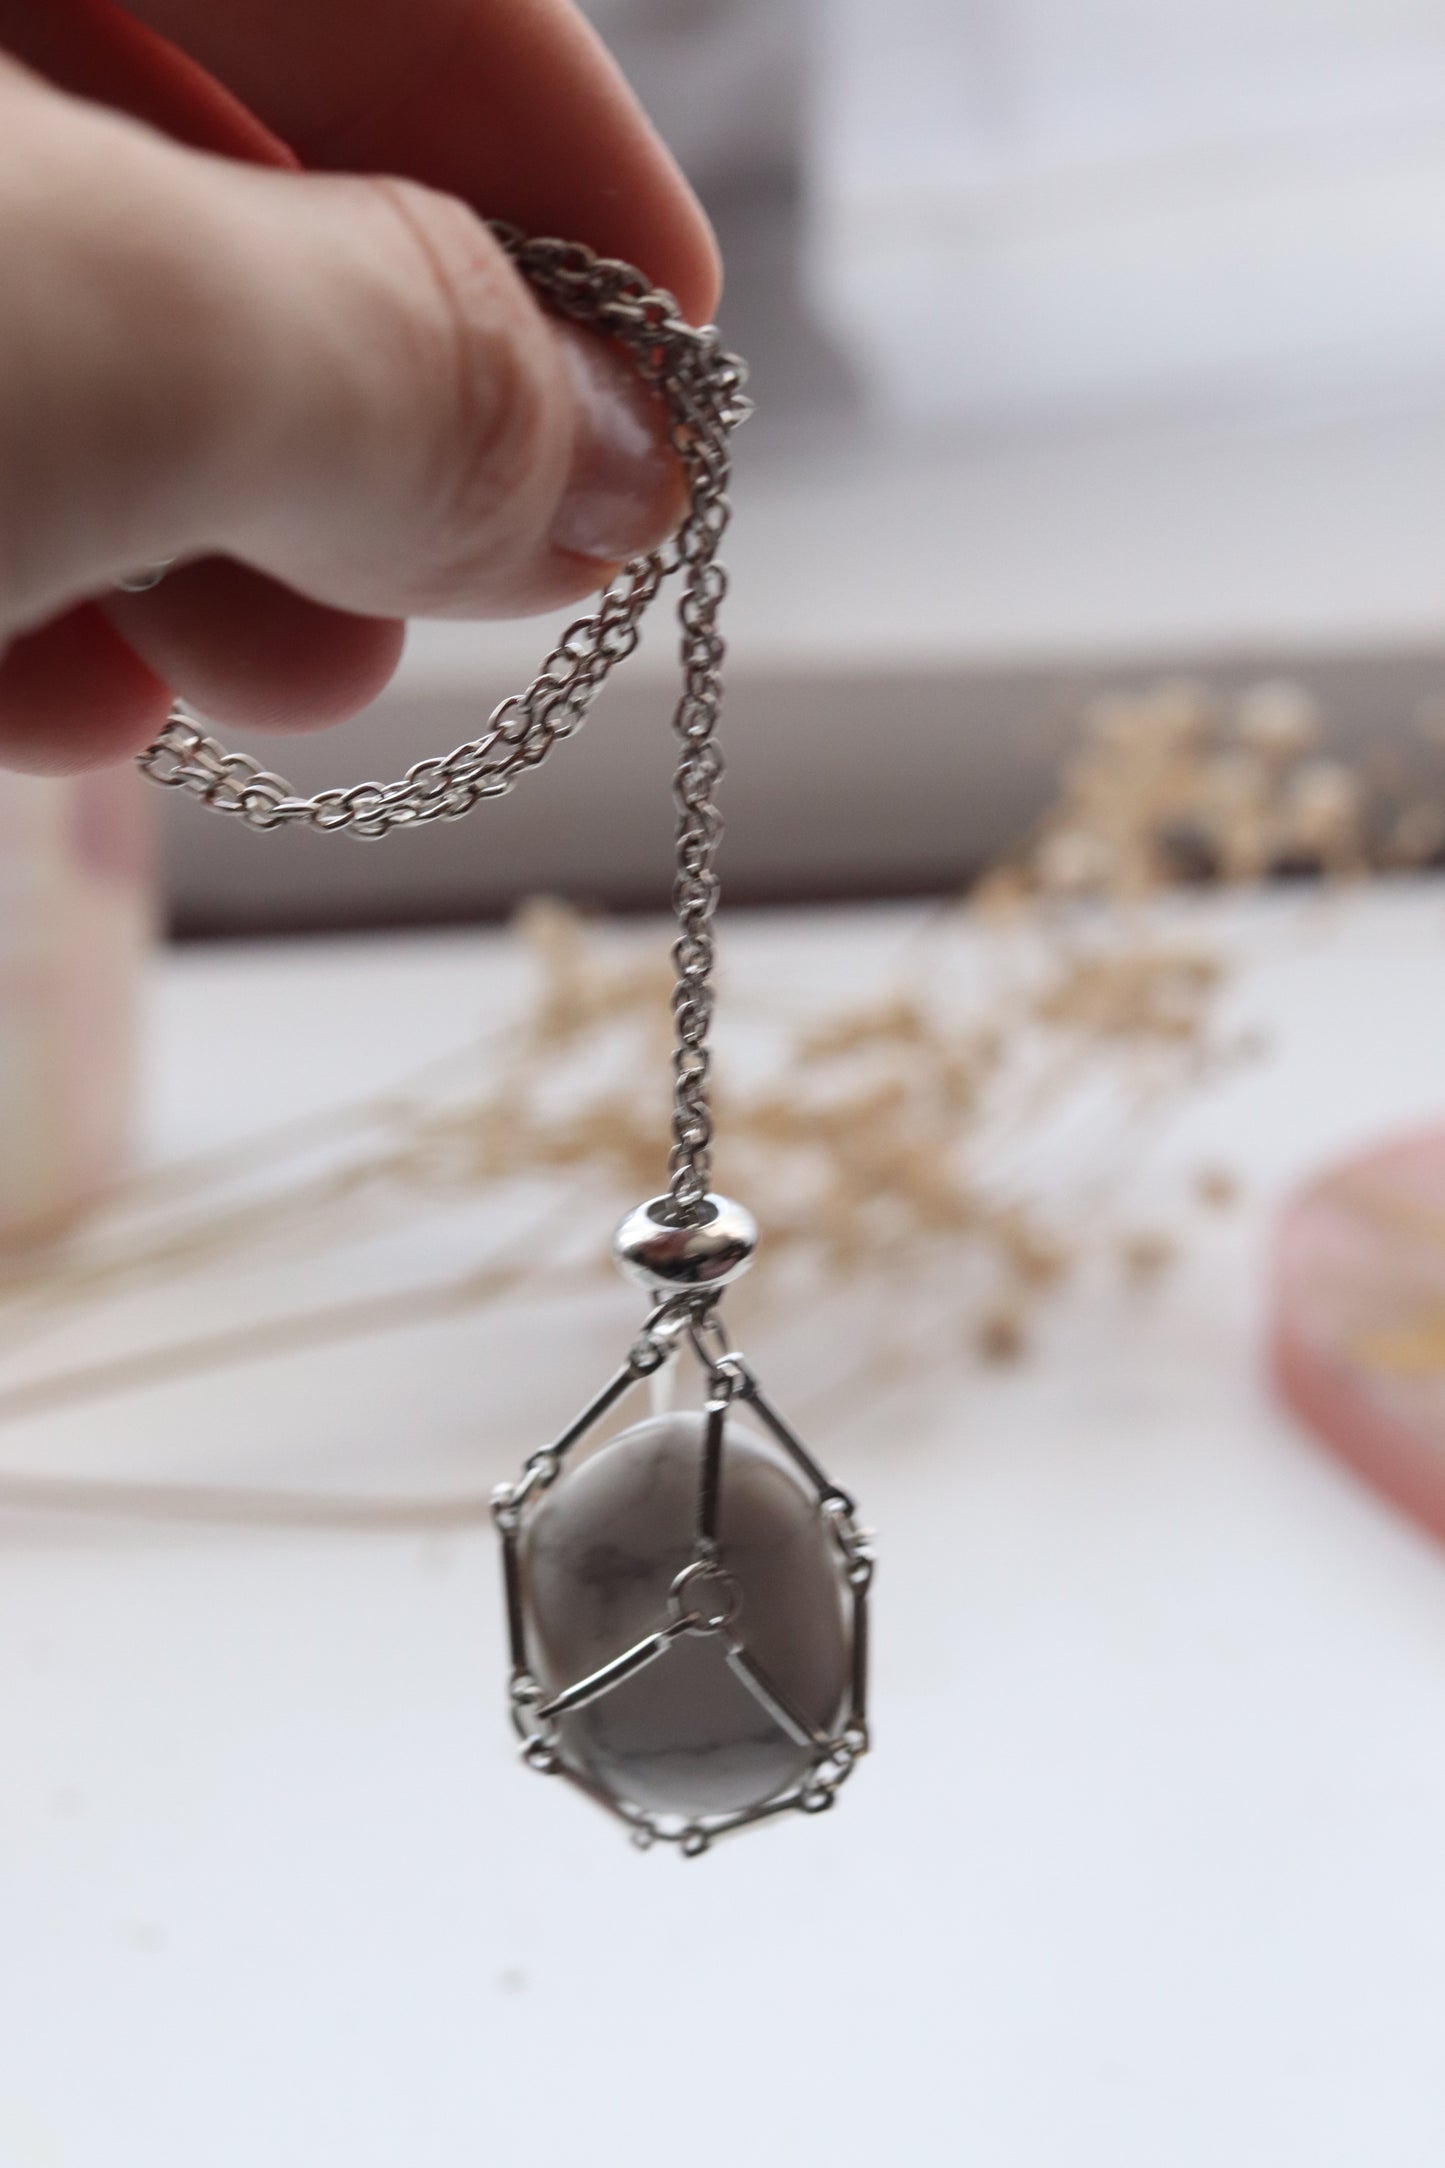 Crystal holder mesh necklace